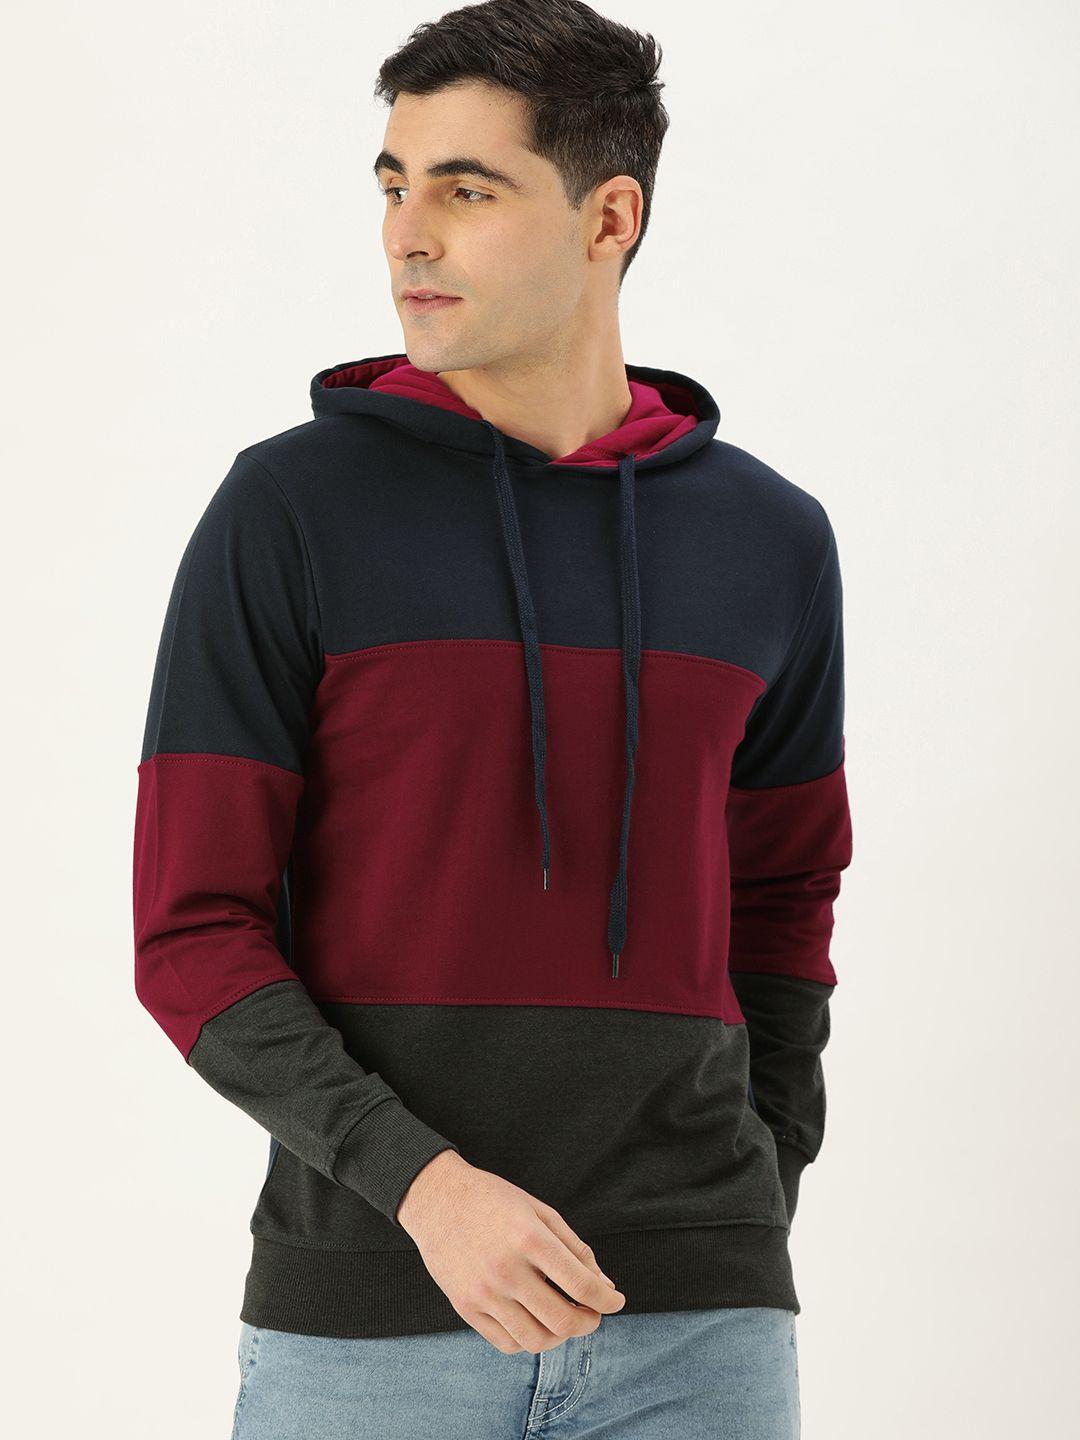 veirdo-men-navy-blue-&-red-colourblocked-hooded-sweatshirt